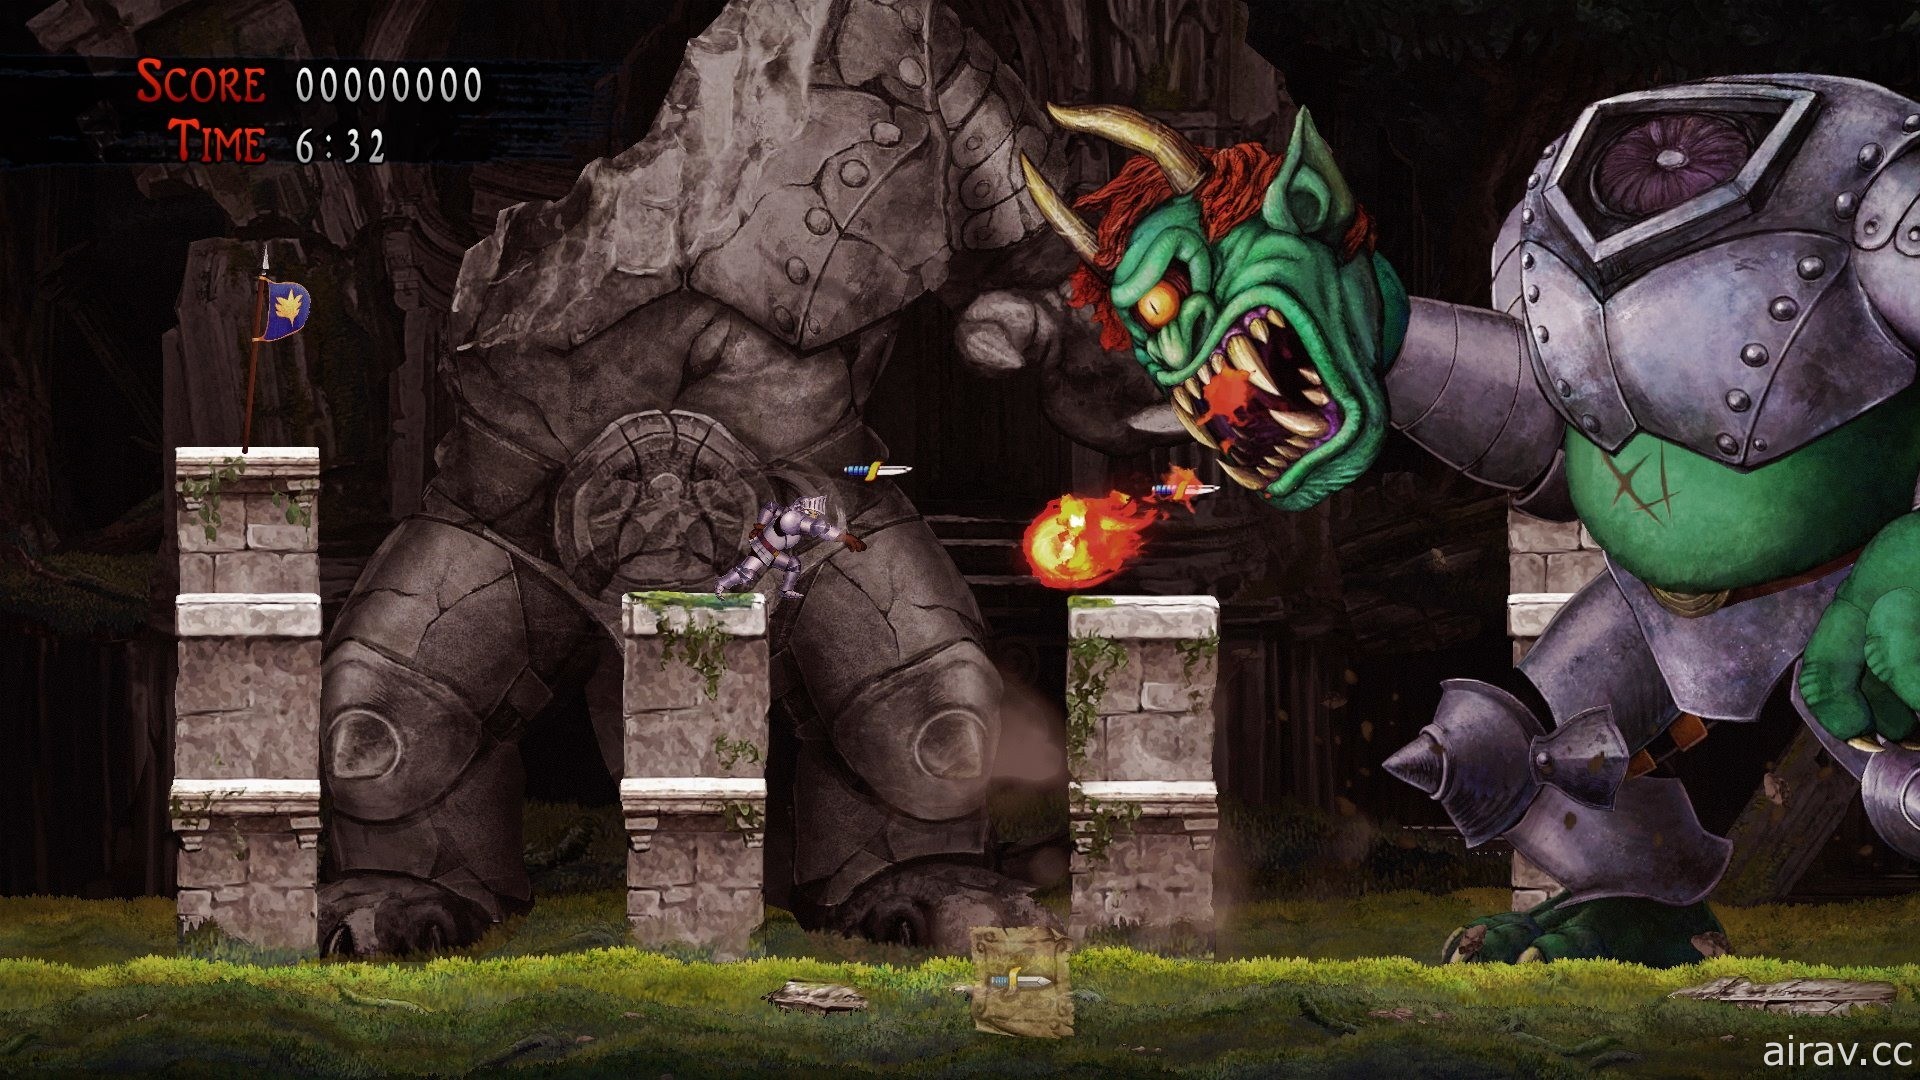 《魔界村》系列最新作《经典回归 魔界村》宣布将跨平台推出 PS4 / Xbox One / PC 版